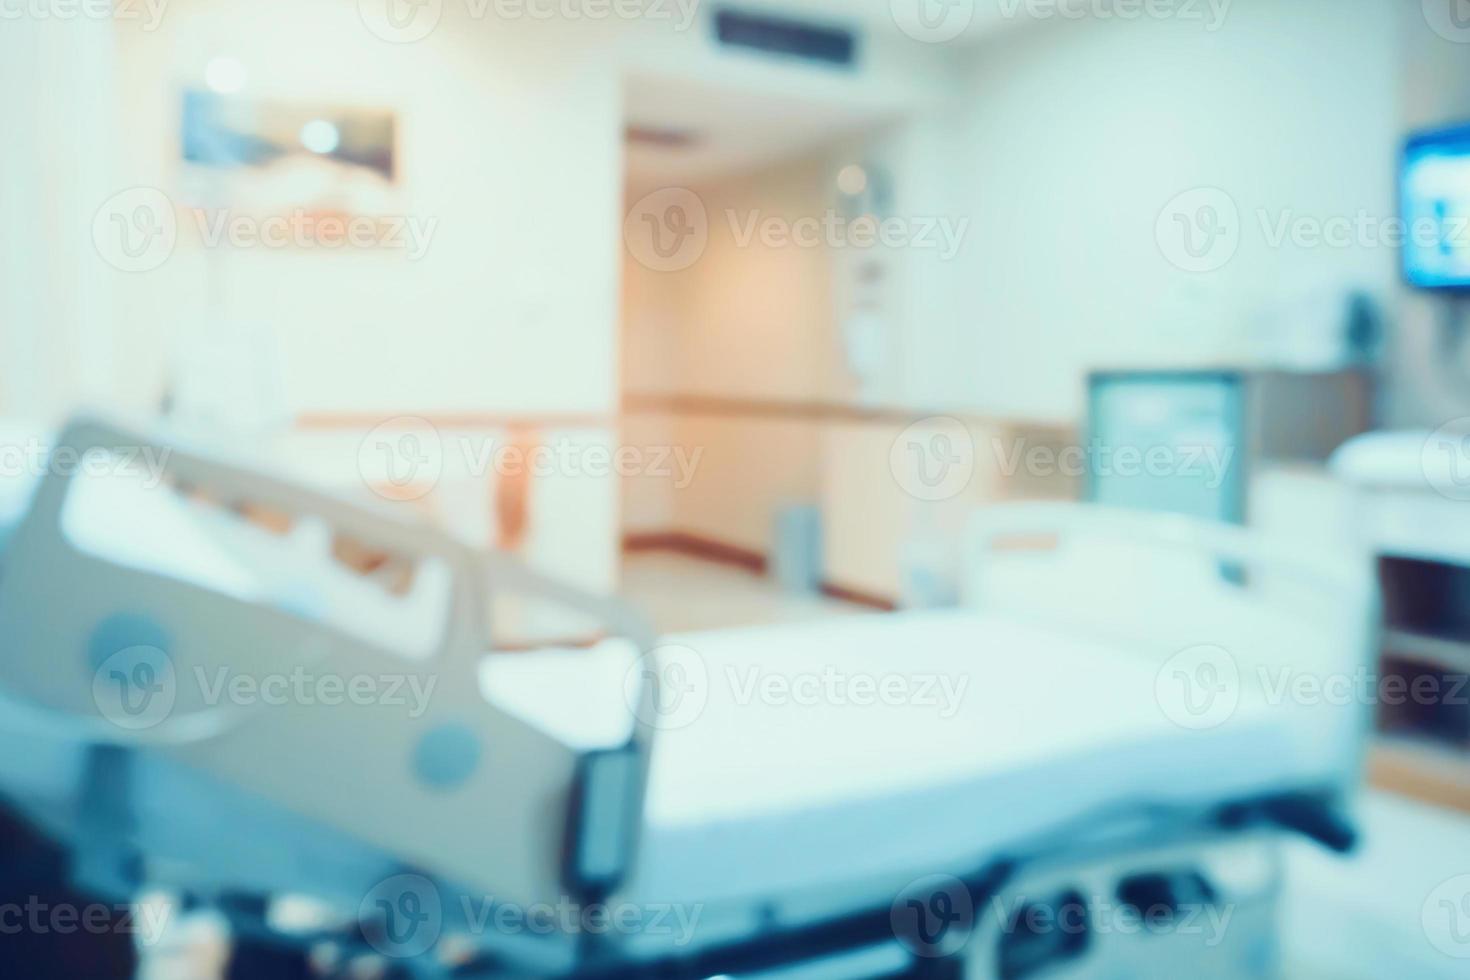 Resumo borrão interior do quarto de hospital com cama médica para plano de fundo foto